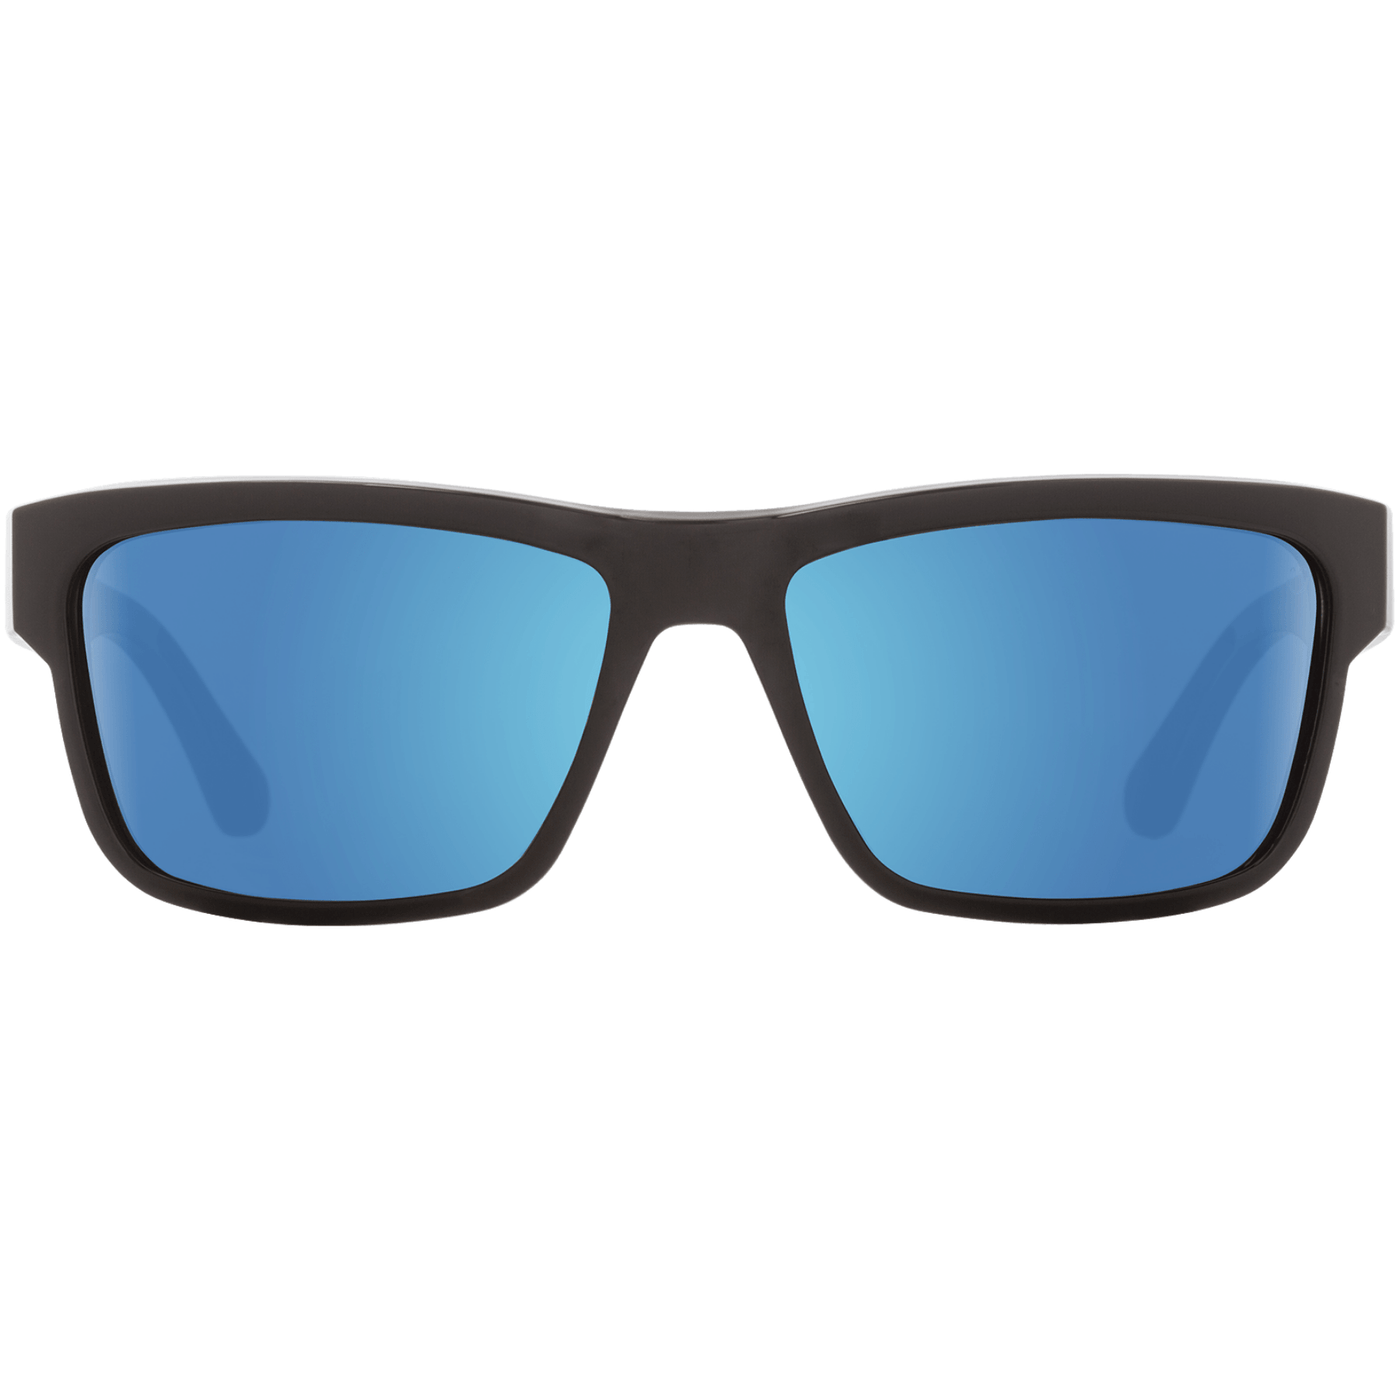 frazier spy sunglasses - light blue